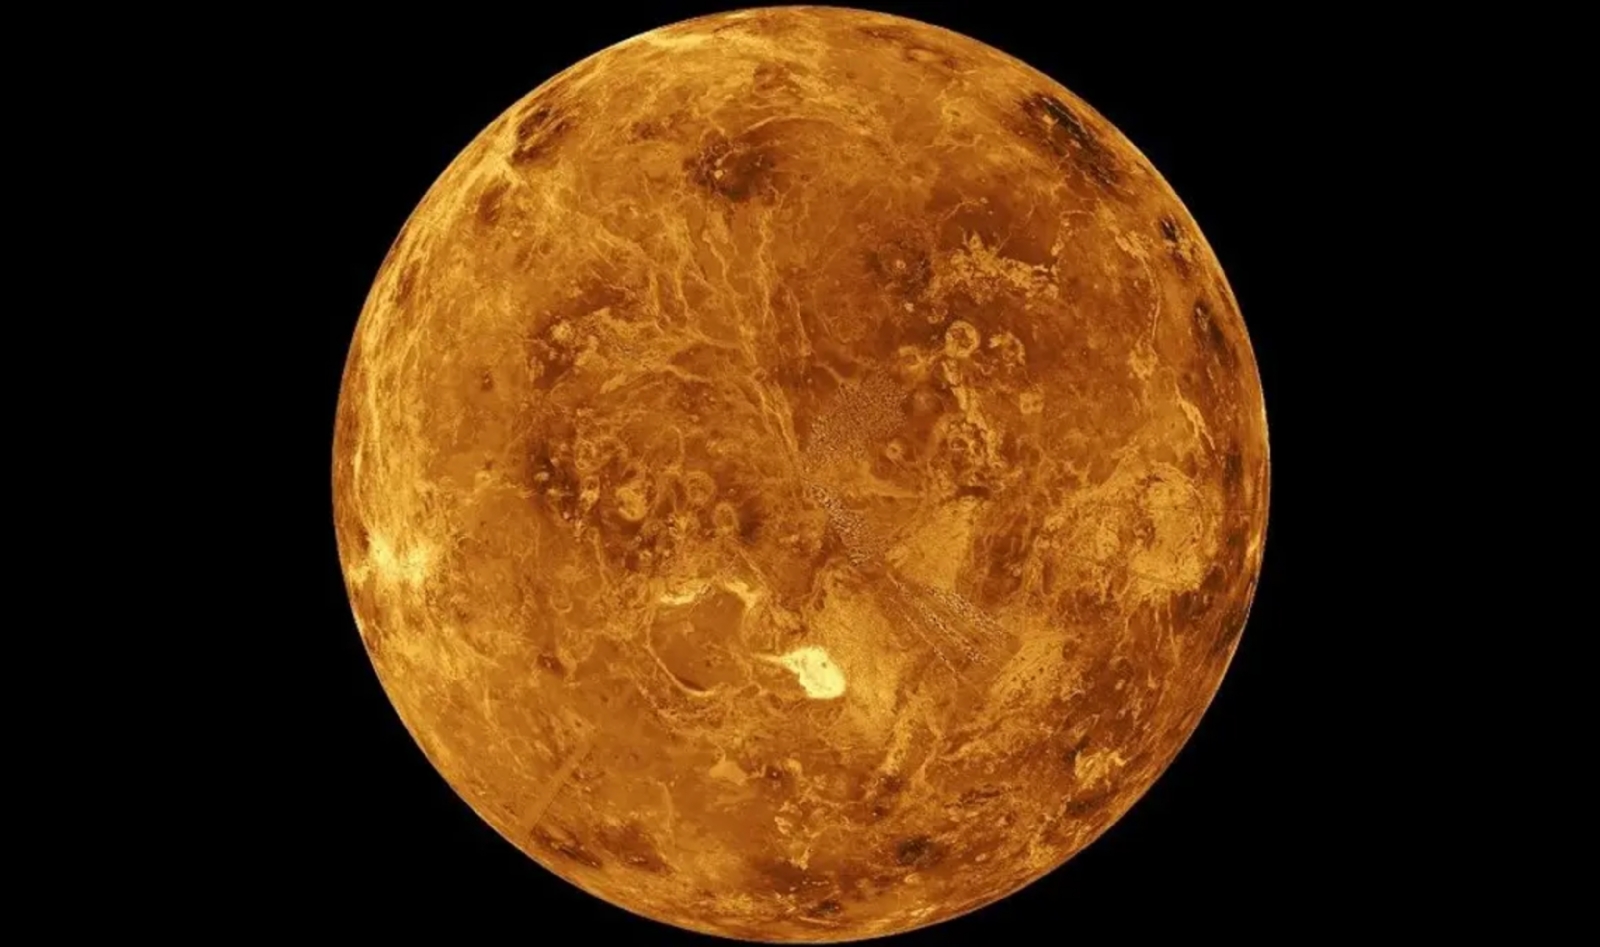 ¿El siguiente hogar para los humanos será Venus? La NASA dice que si